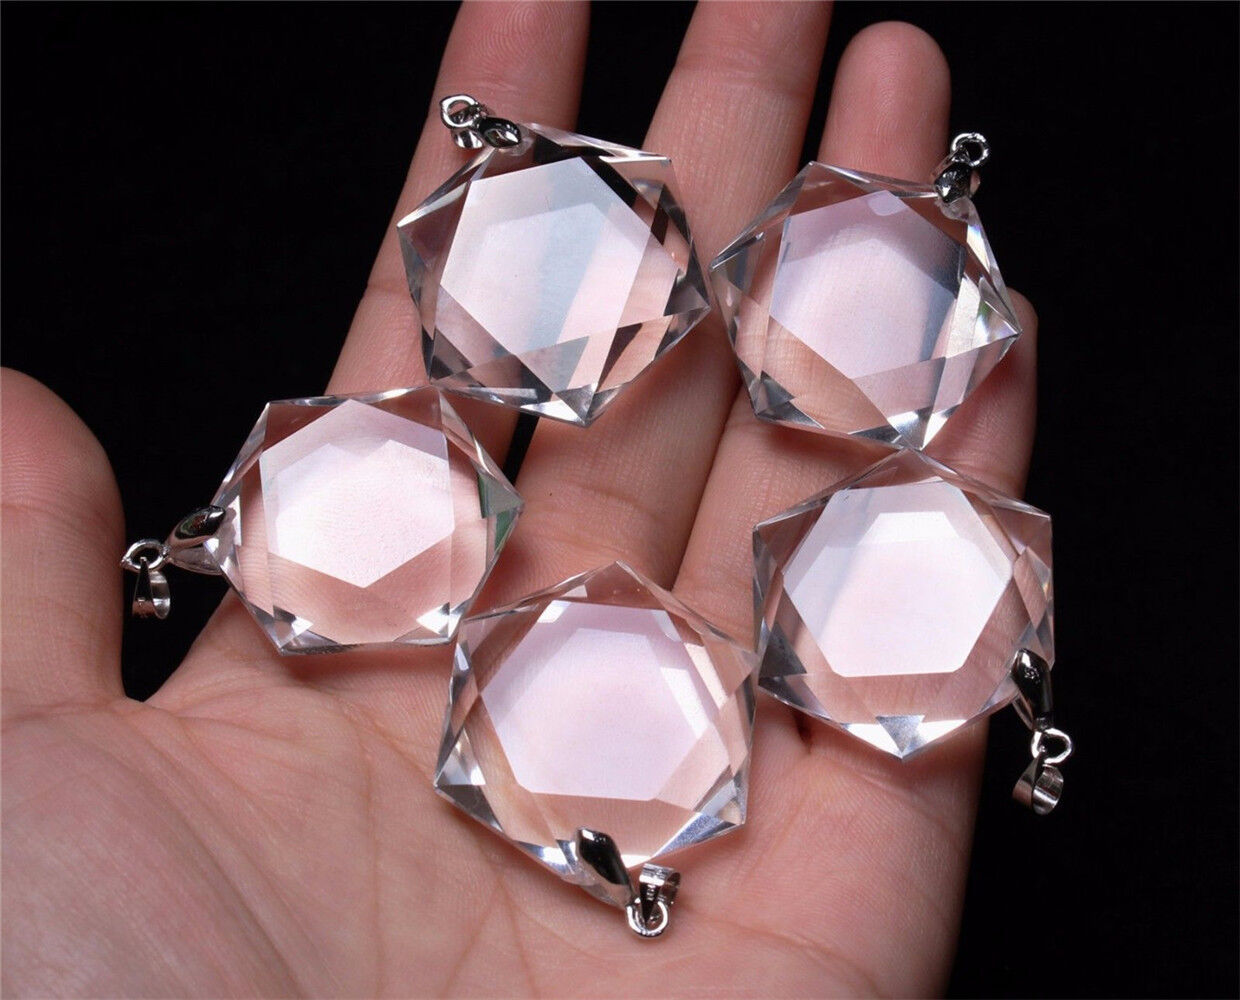 5 Pcs Hexagon Pendant - Natural Clear Quartz Crystal 3D Hexagon / Star of David